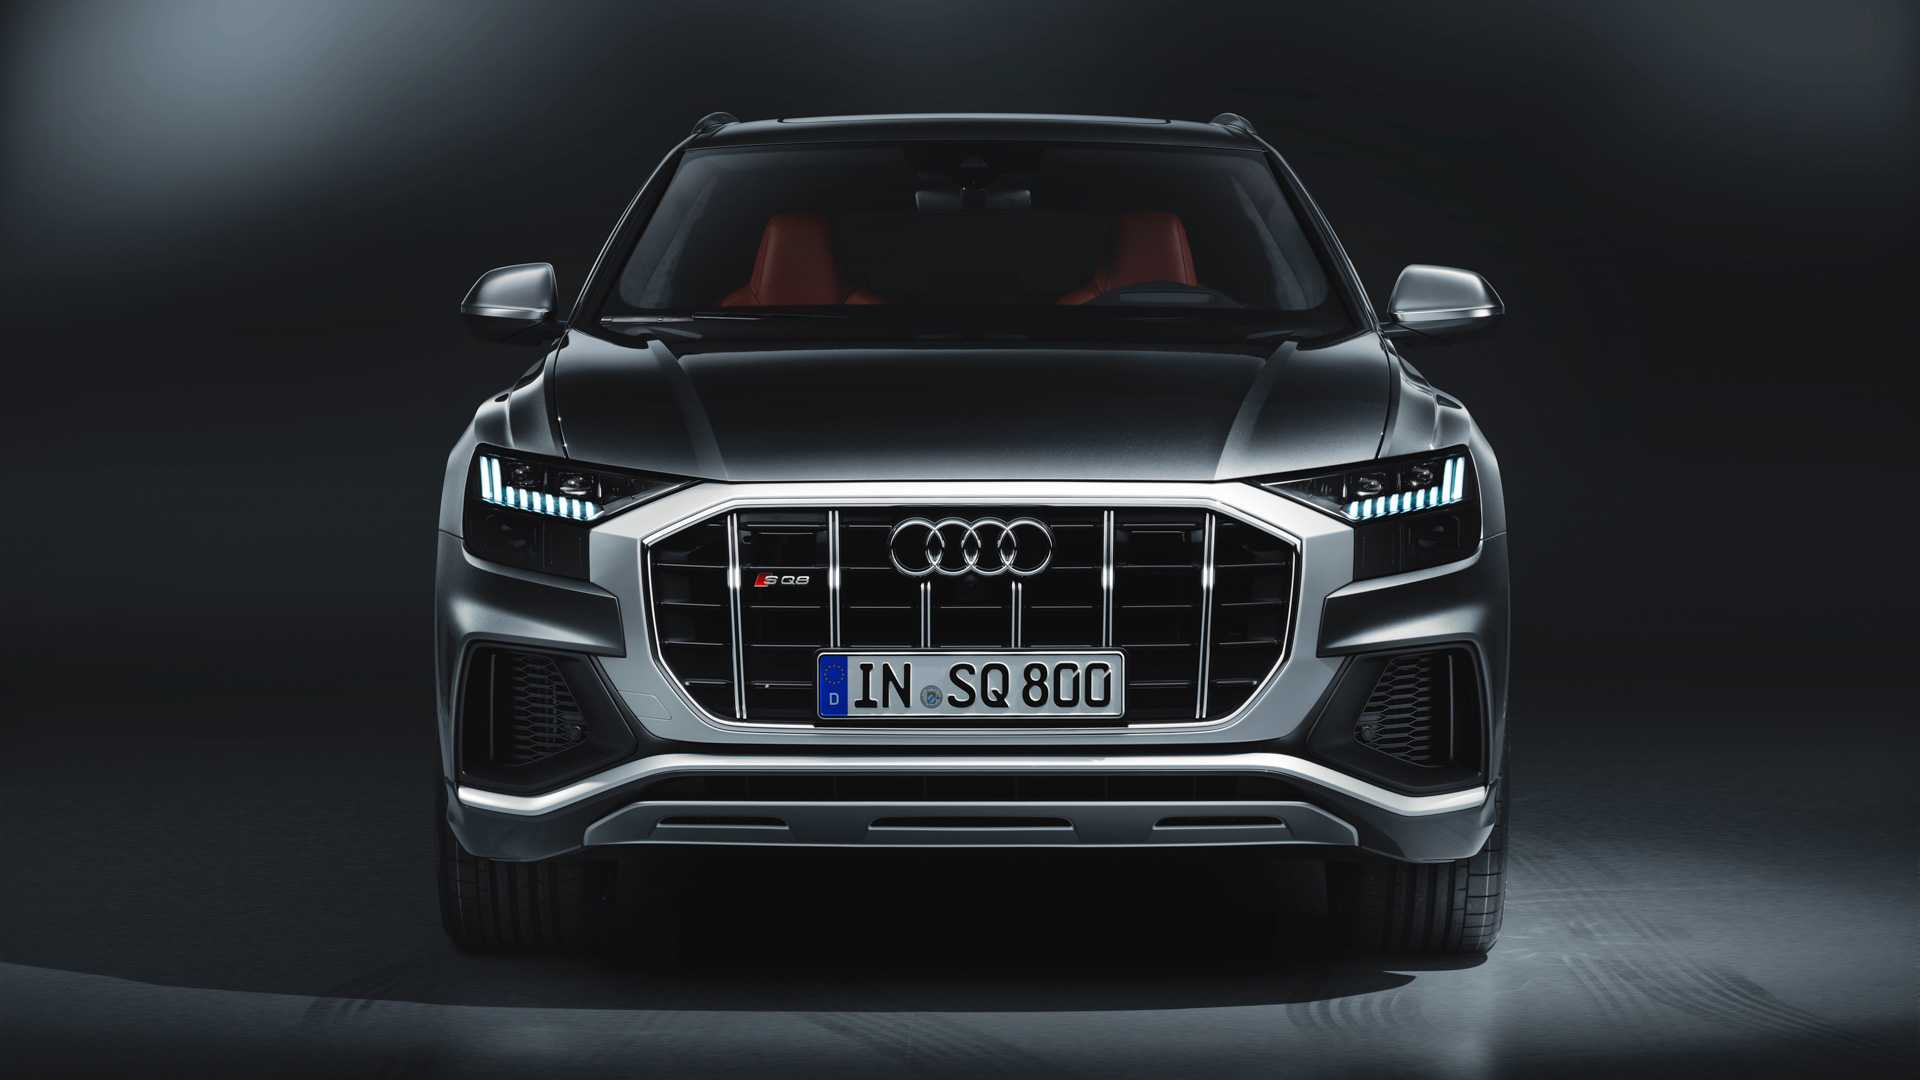 Audi sq8 2019-2020 - фото, цена и характеристики модели ауди sq8